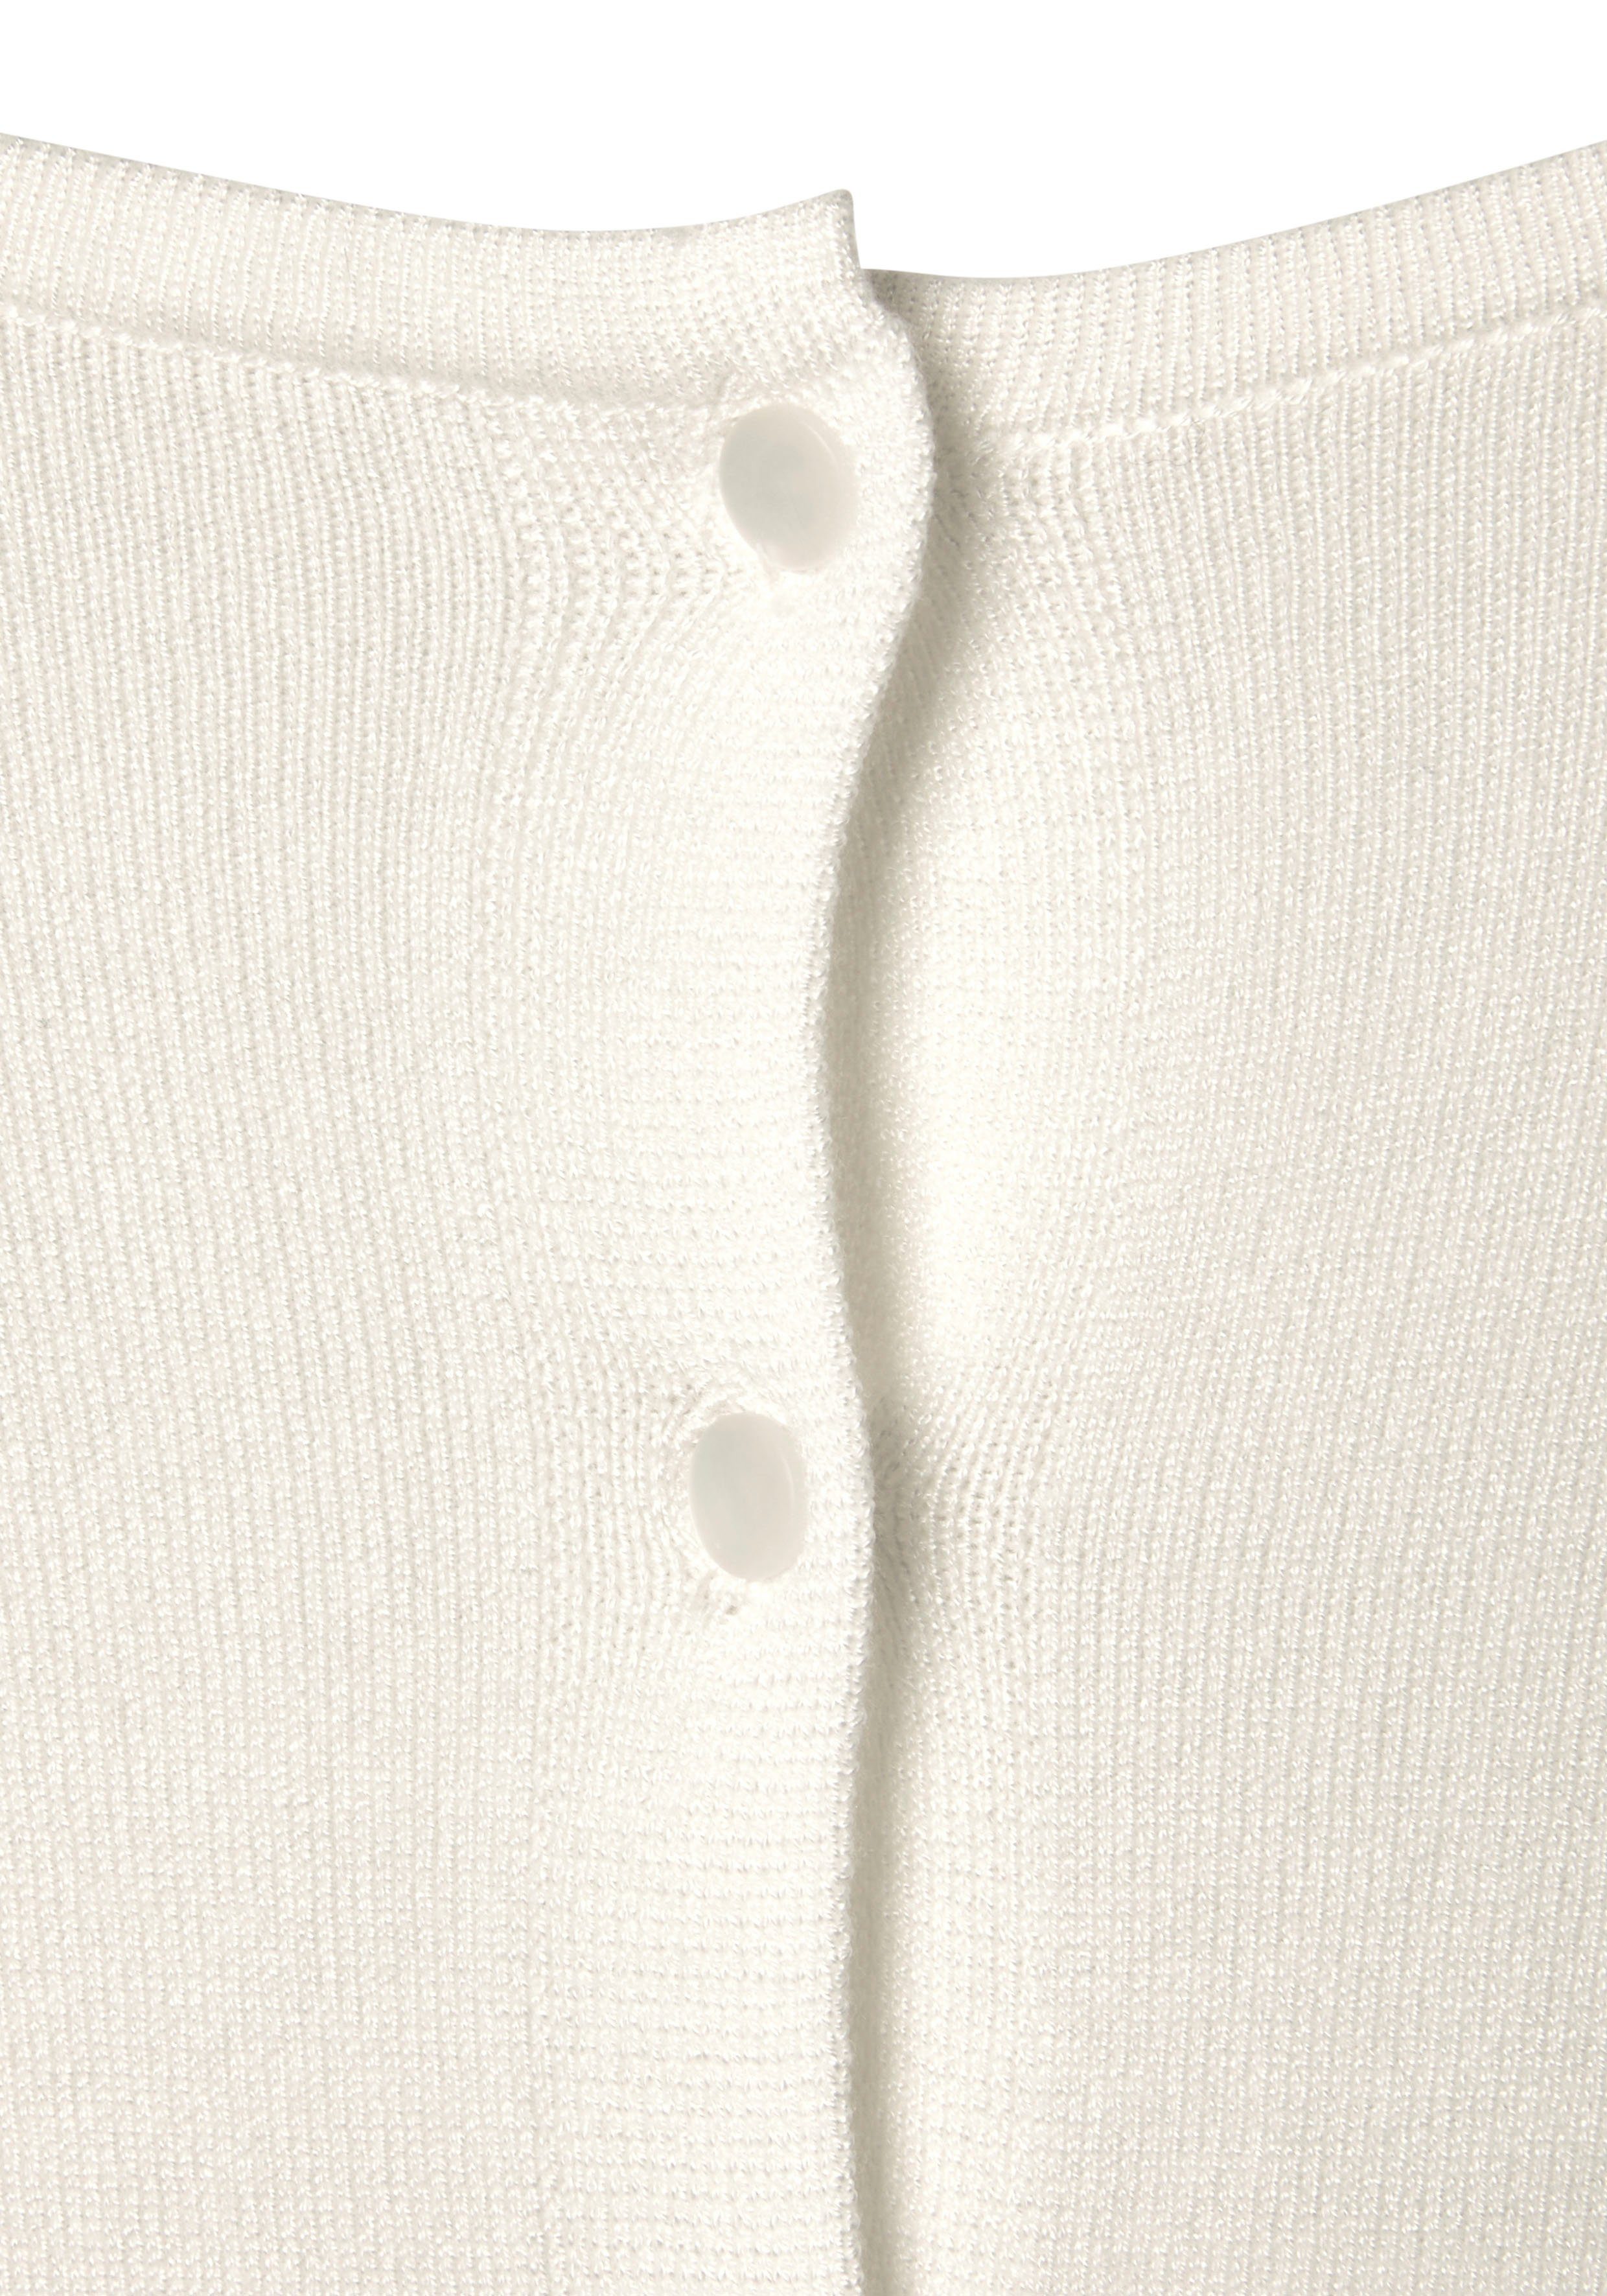 Vivance Kurzarmpullover mit Knopfleiste, Feinstrickqualität tragbar, beidseitig weiß 3/4-Pullover